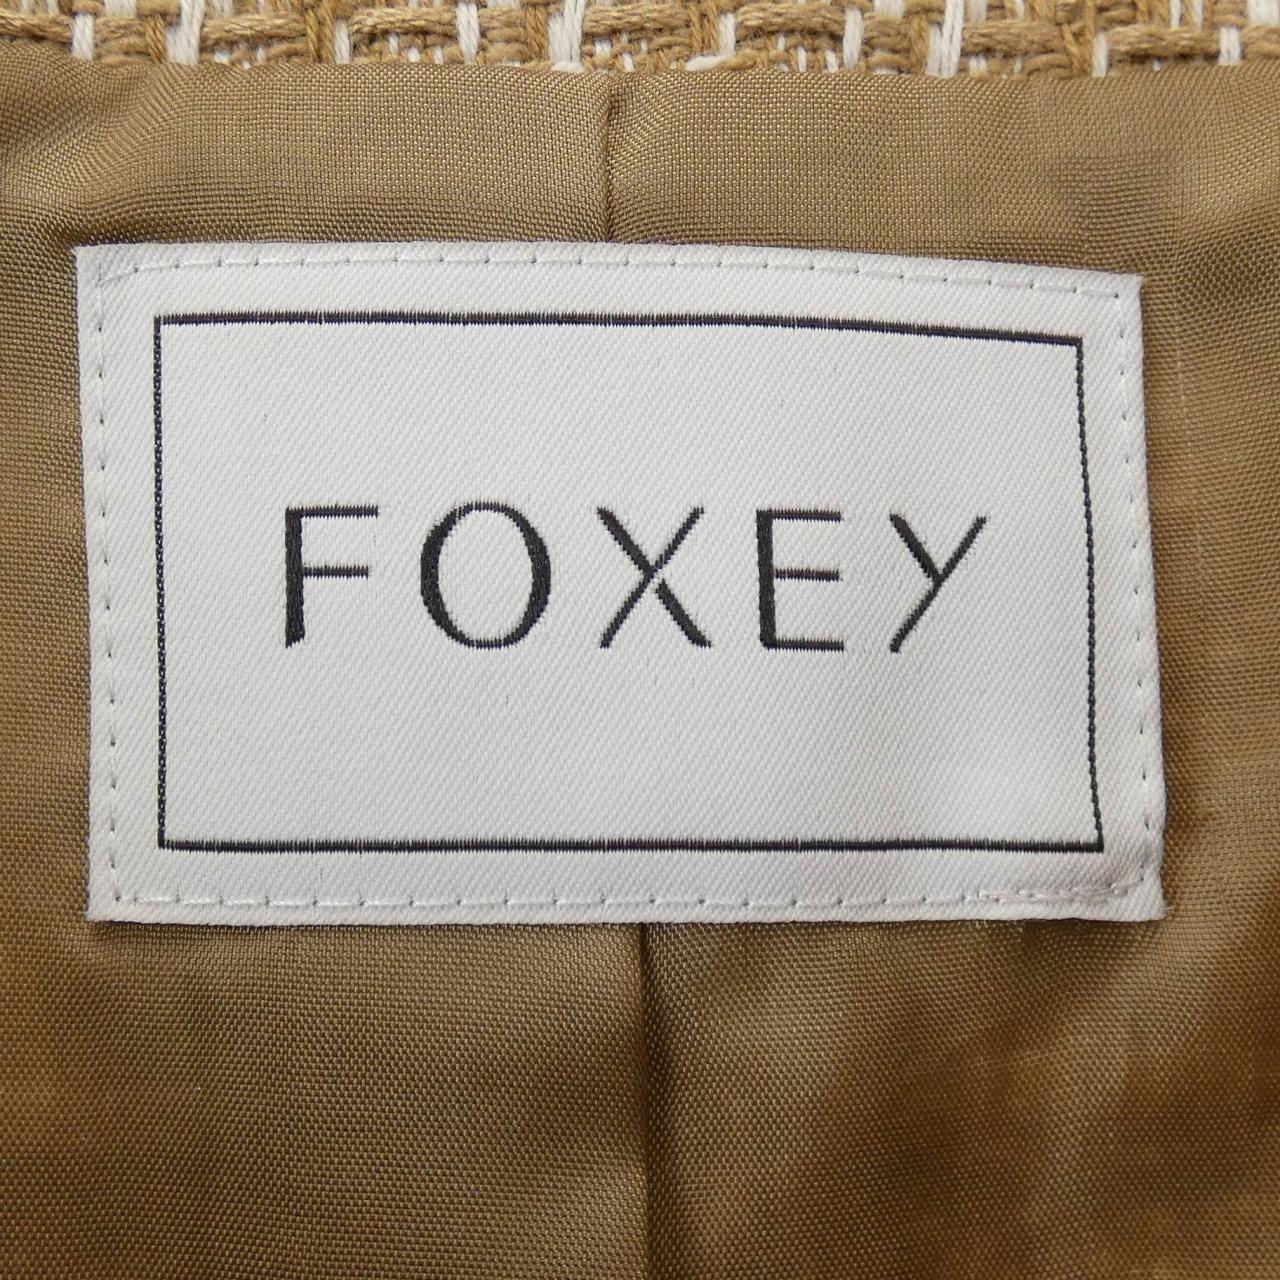 Phoxy FOXEY夹克